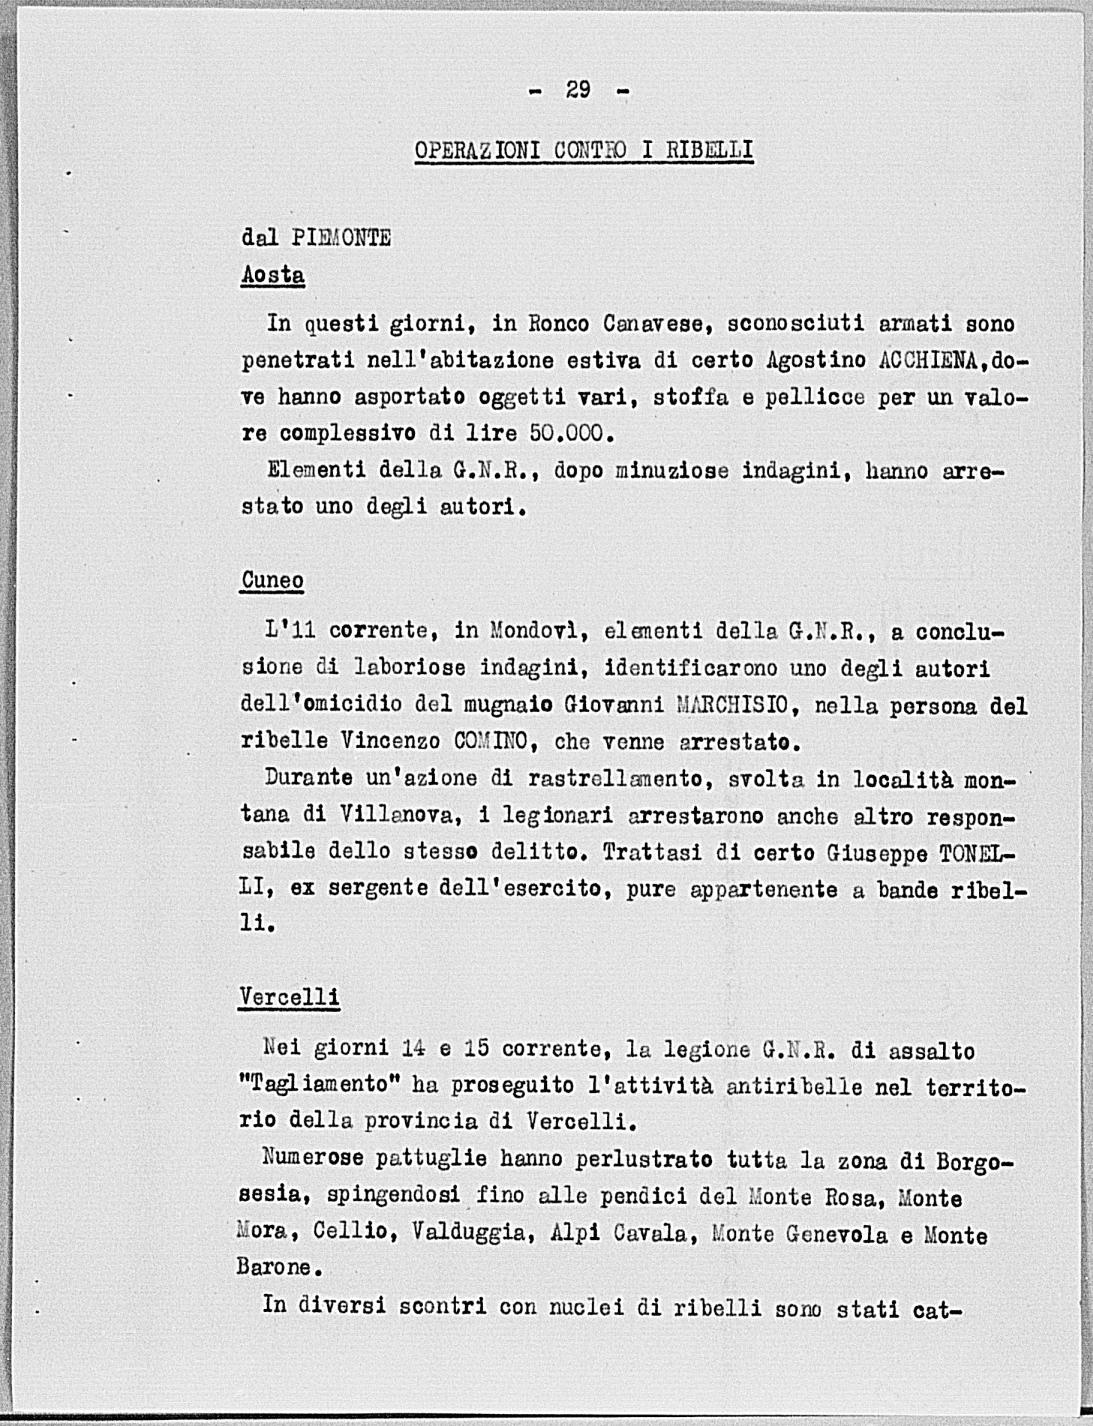 Notizia tratta dal Notiziario della Guardia Nazionale Repubblicana del giorno 18-05-1944